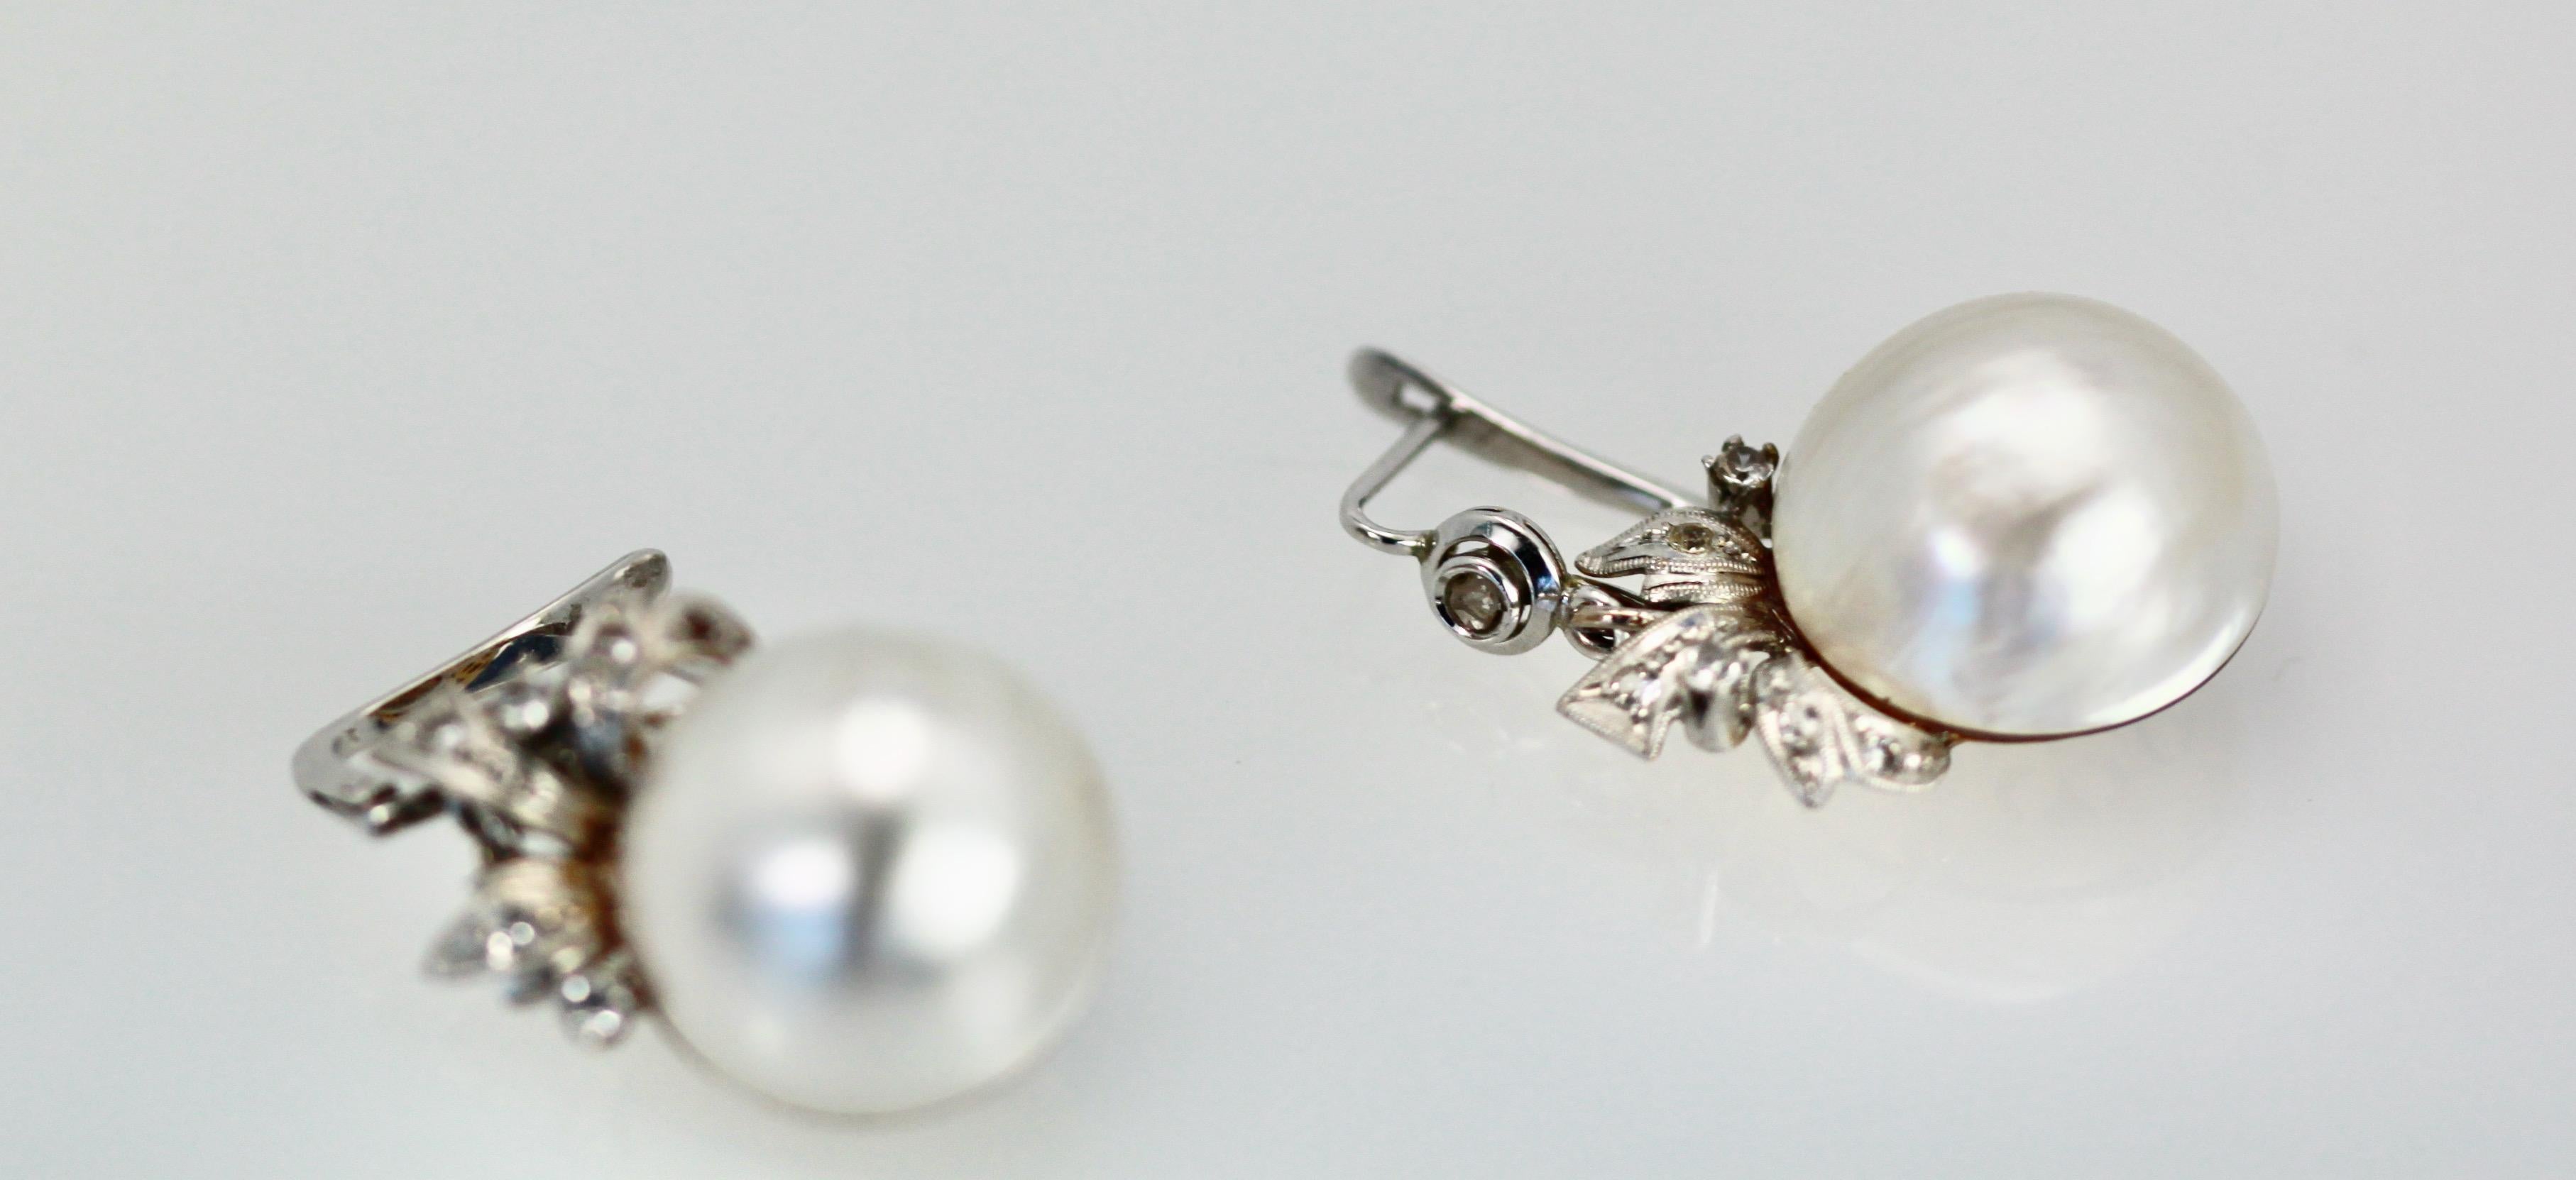 Diese edwardianischen Mabe-Perlenohrringe befinden sich seit Jahren in meiner Sammlung und es ist nun Zeit für einen neuen Besitzer.  Diese Mabe-Perlenohrringe waren ursprünglich als Clips gedacht, aber ich mag keine Clip-Ohrringe, also habe ich sie